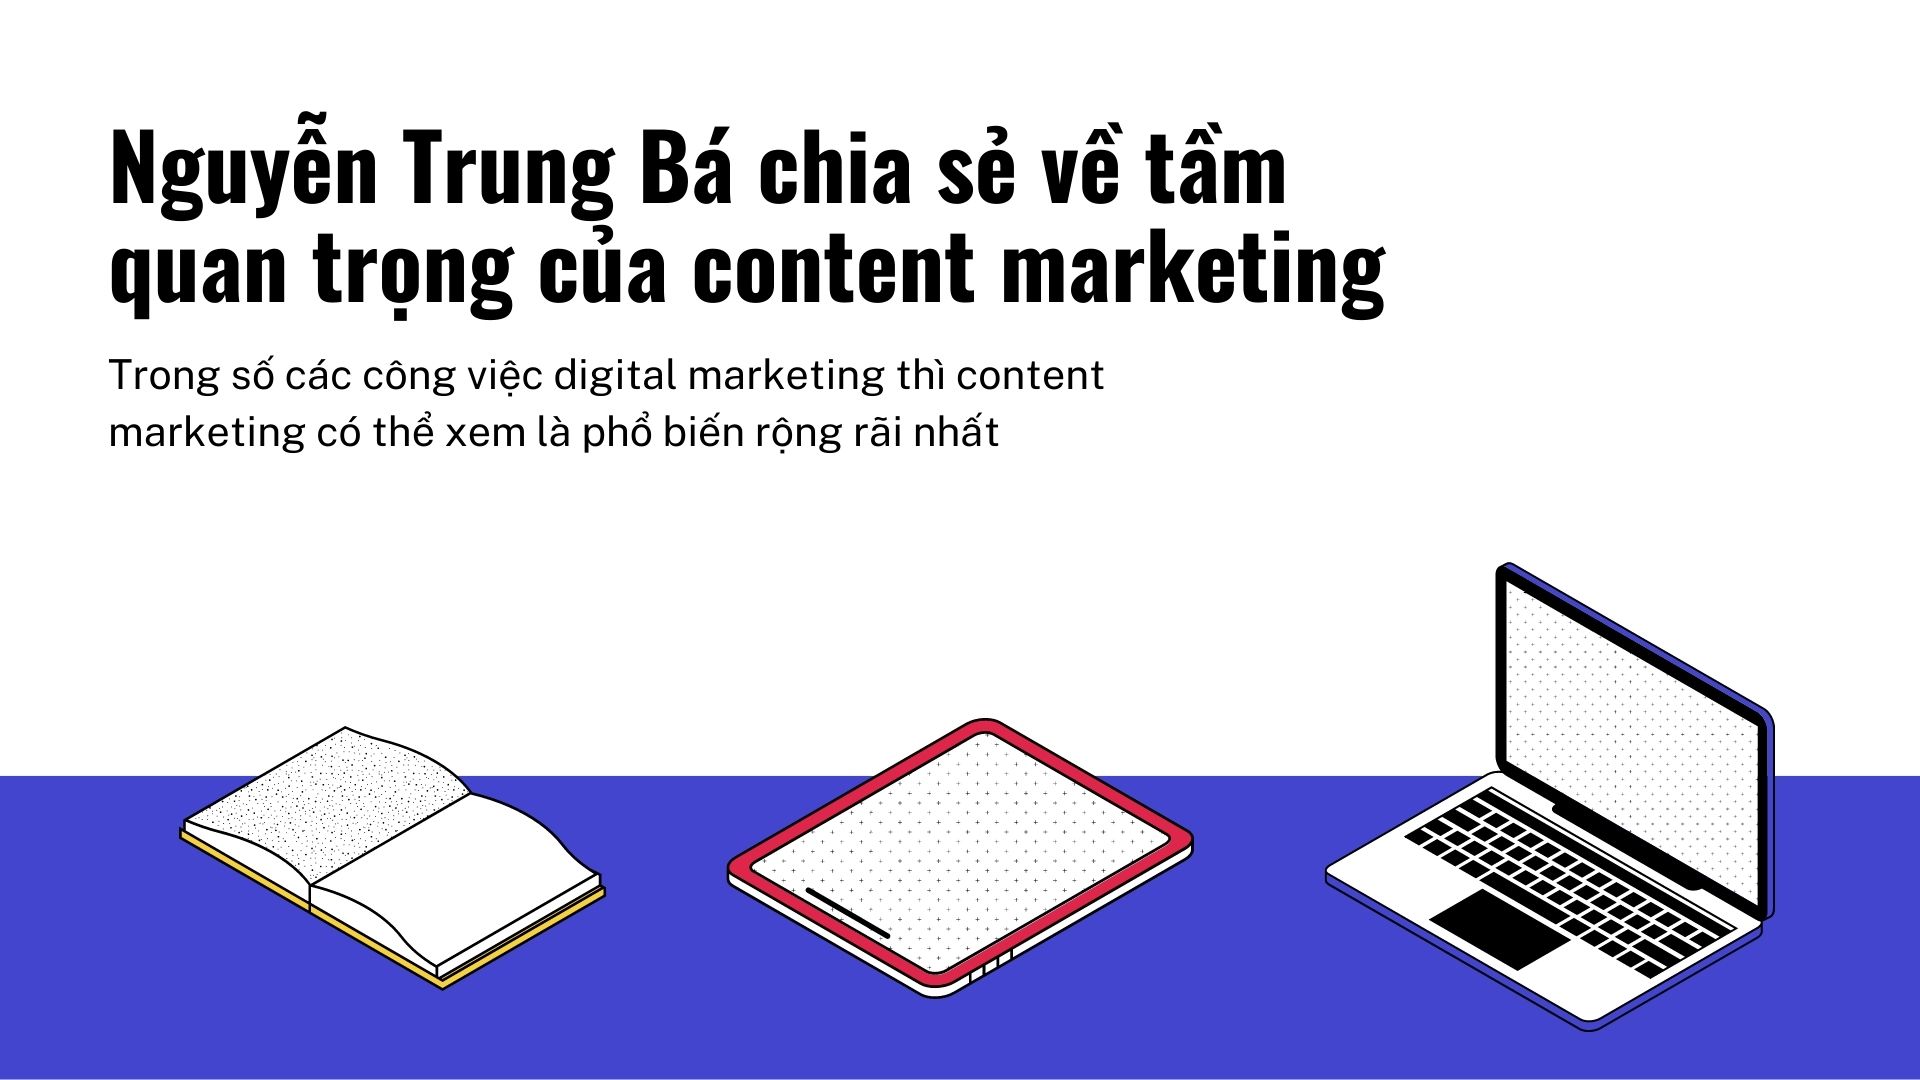 Nguyen Trung Ba chia se ve tam quan trong cua content marketing 1